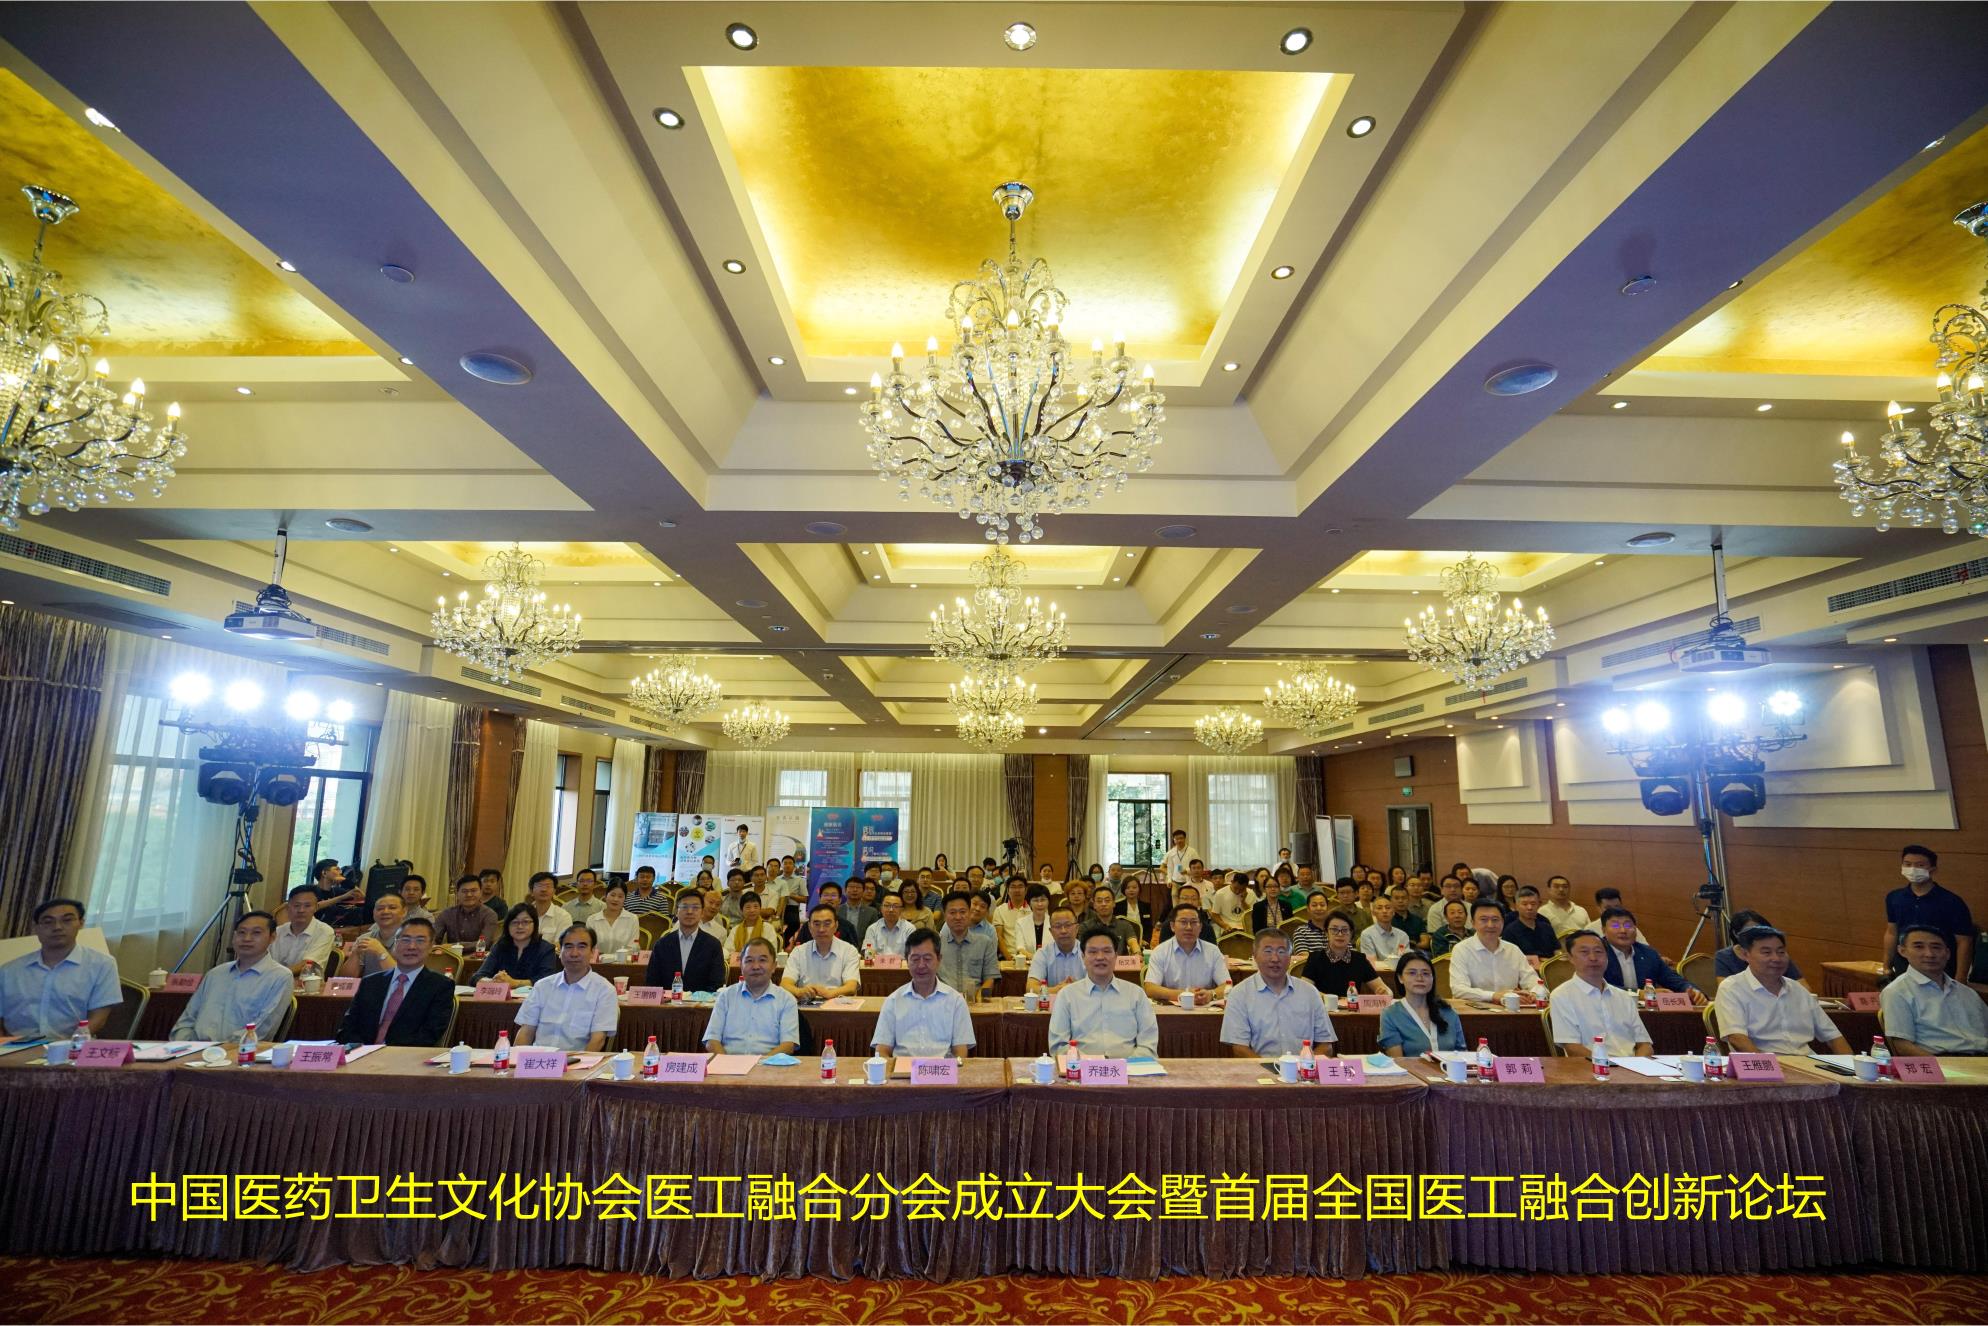 乔建永校长出席中国医药卫生文化协会医工融合分会成立仪式并致辞